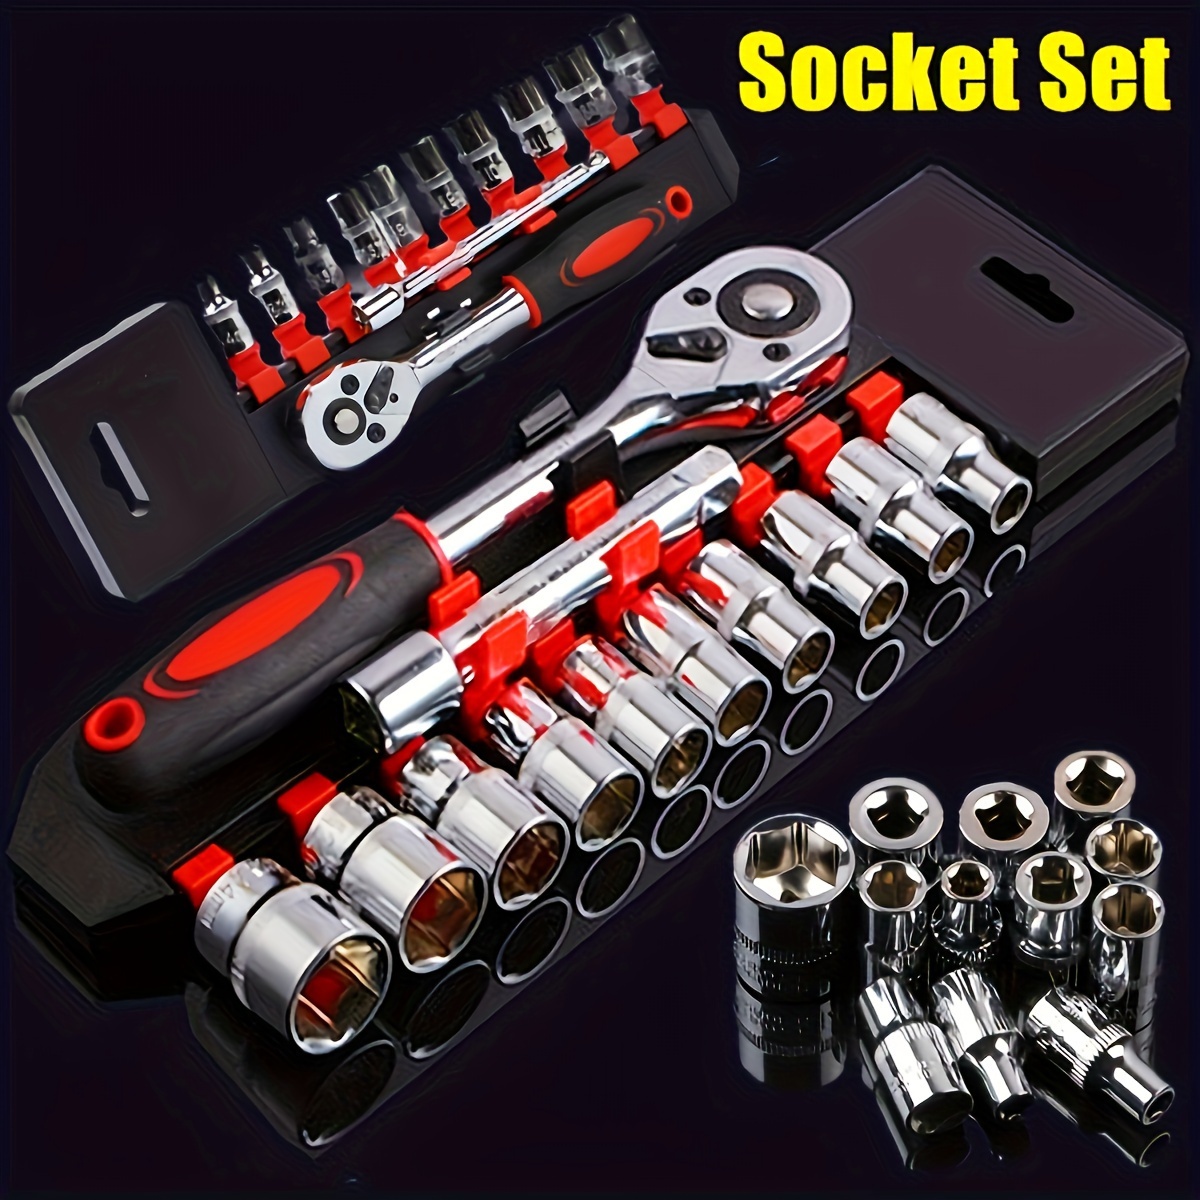 

12pcs Socket Set, 1/4 Wrench Socket Set, Hardware Car Boat Motorcycle Bicycle Repairing Tool